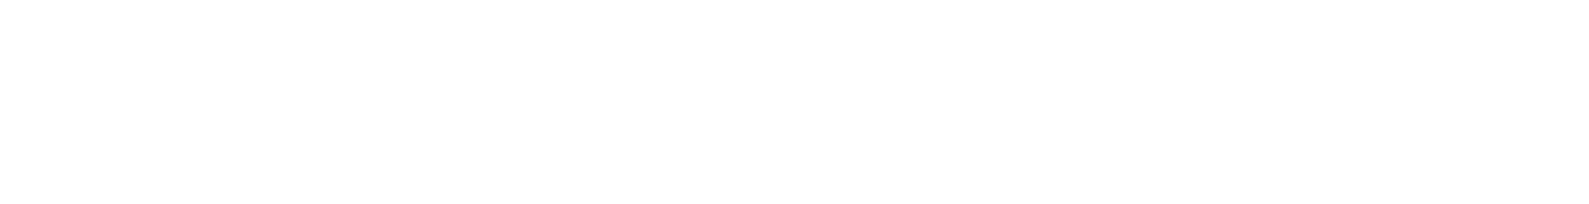 Osaka Gas
 logo large for dark backgrounds (transparent PNG)